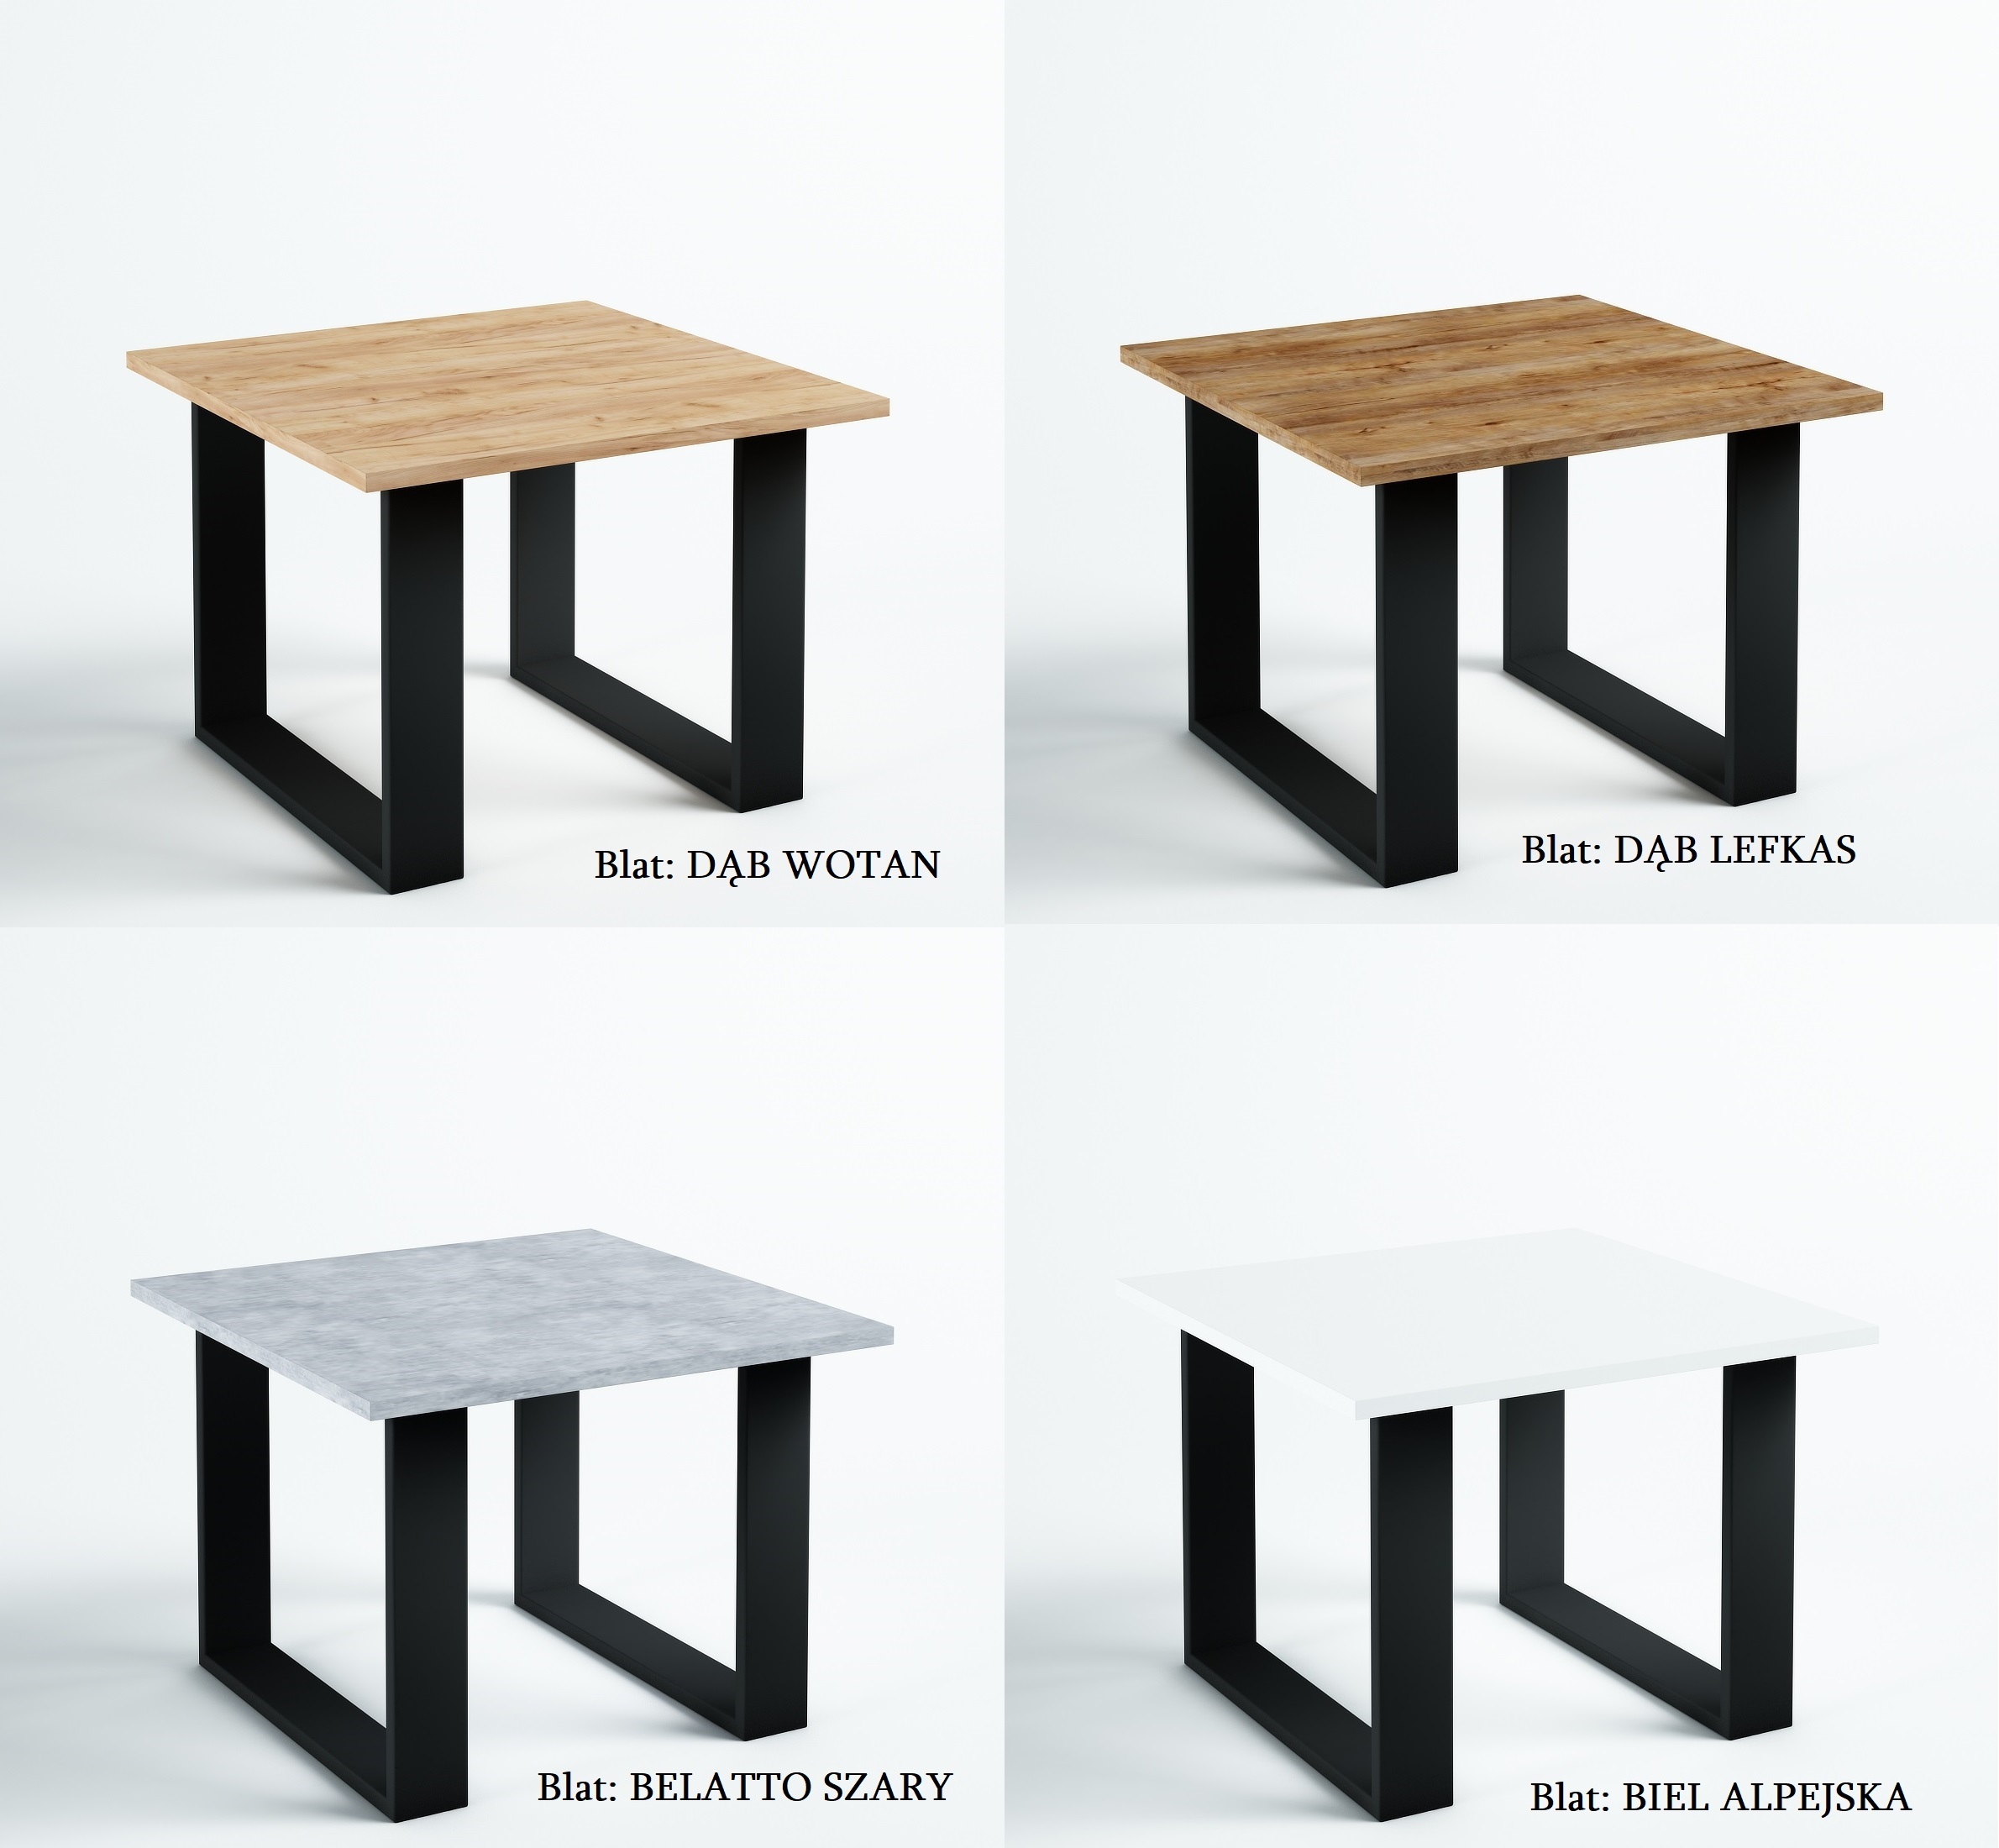 Kwadratowy stolik kawowy 65x65 do salonu styl loft - zdjęcie produktu